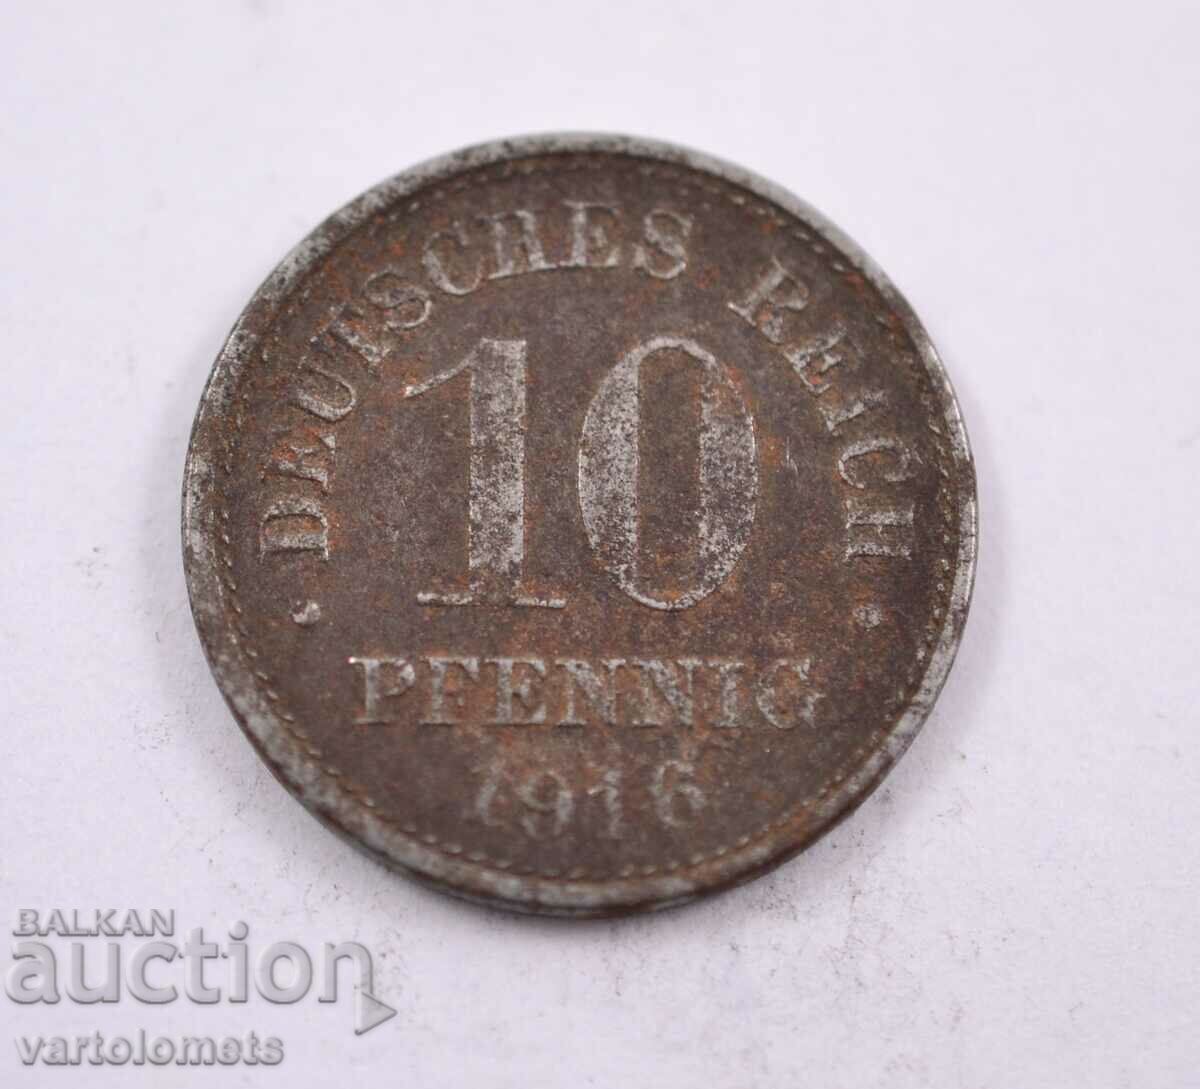 10 pfennig 1916, Germany